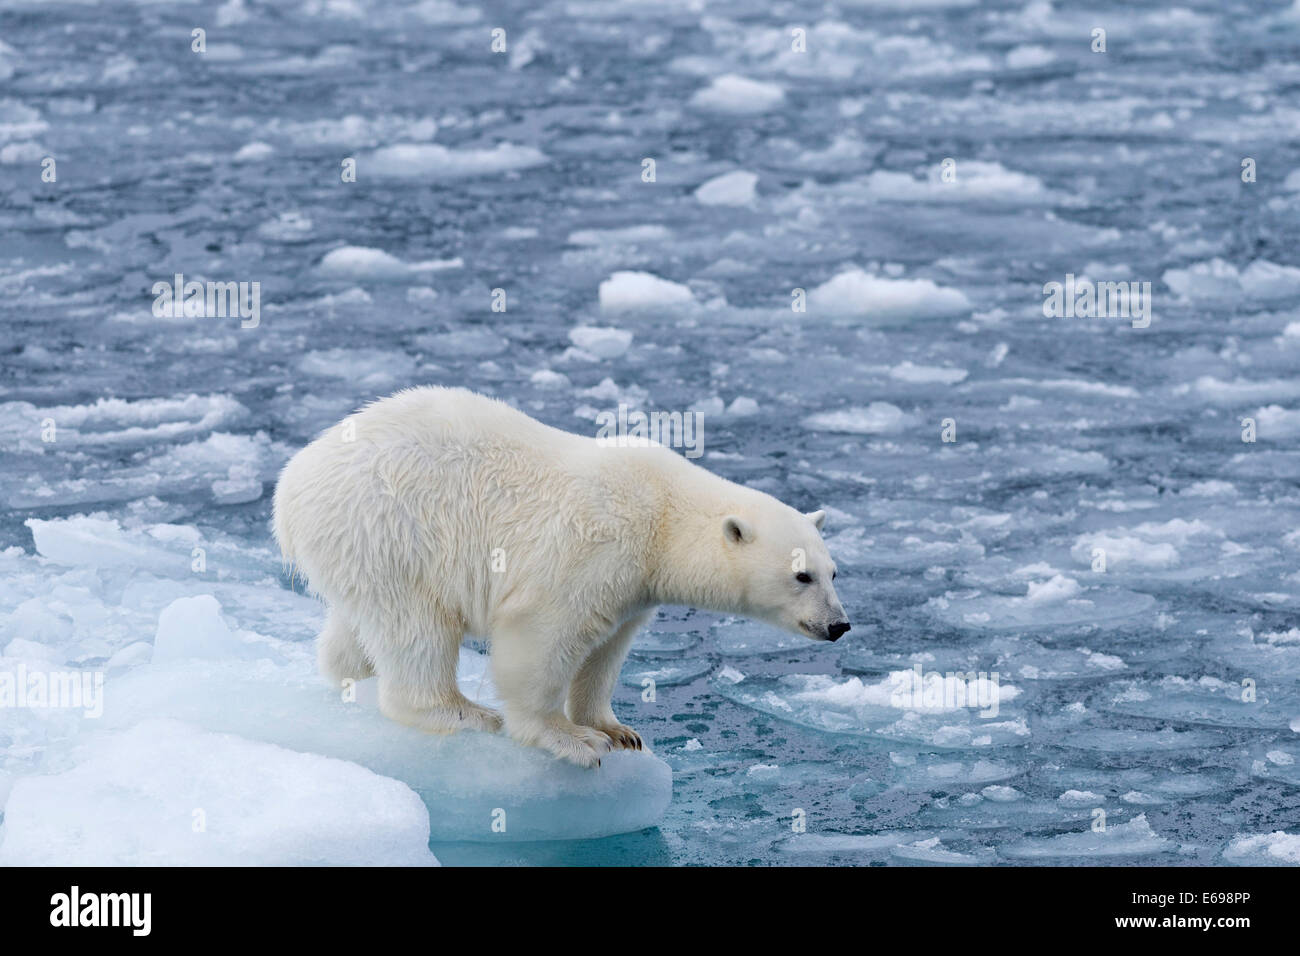 El oso polar (Ursus maritimus) de pie en el borde de un témpano, Spitsbergen, Islas Svalbard y Jan Mayen, Svalbard, Noruega Foto de stock